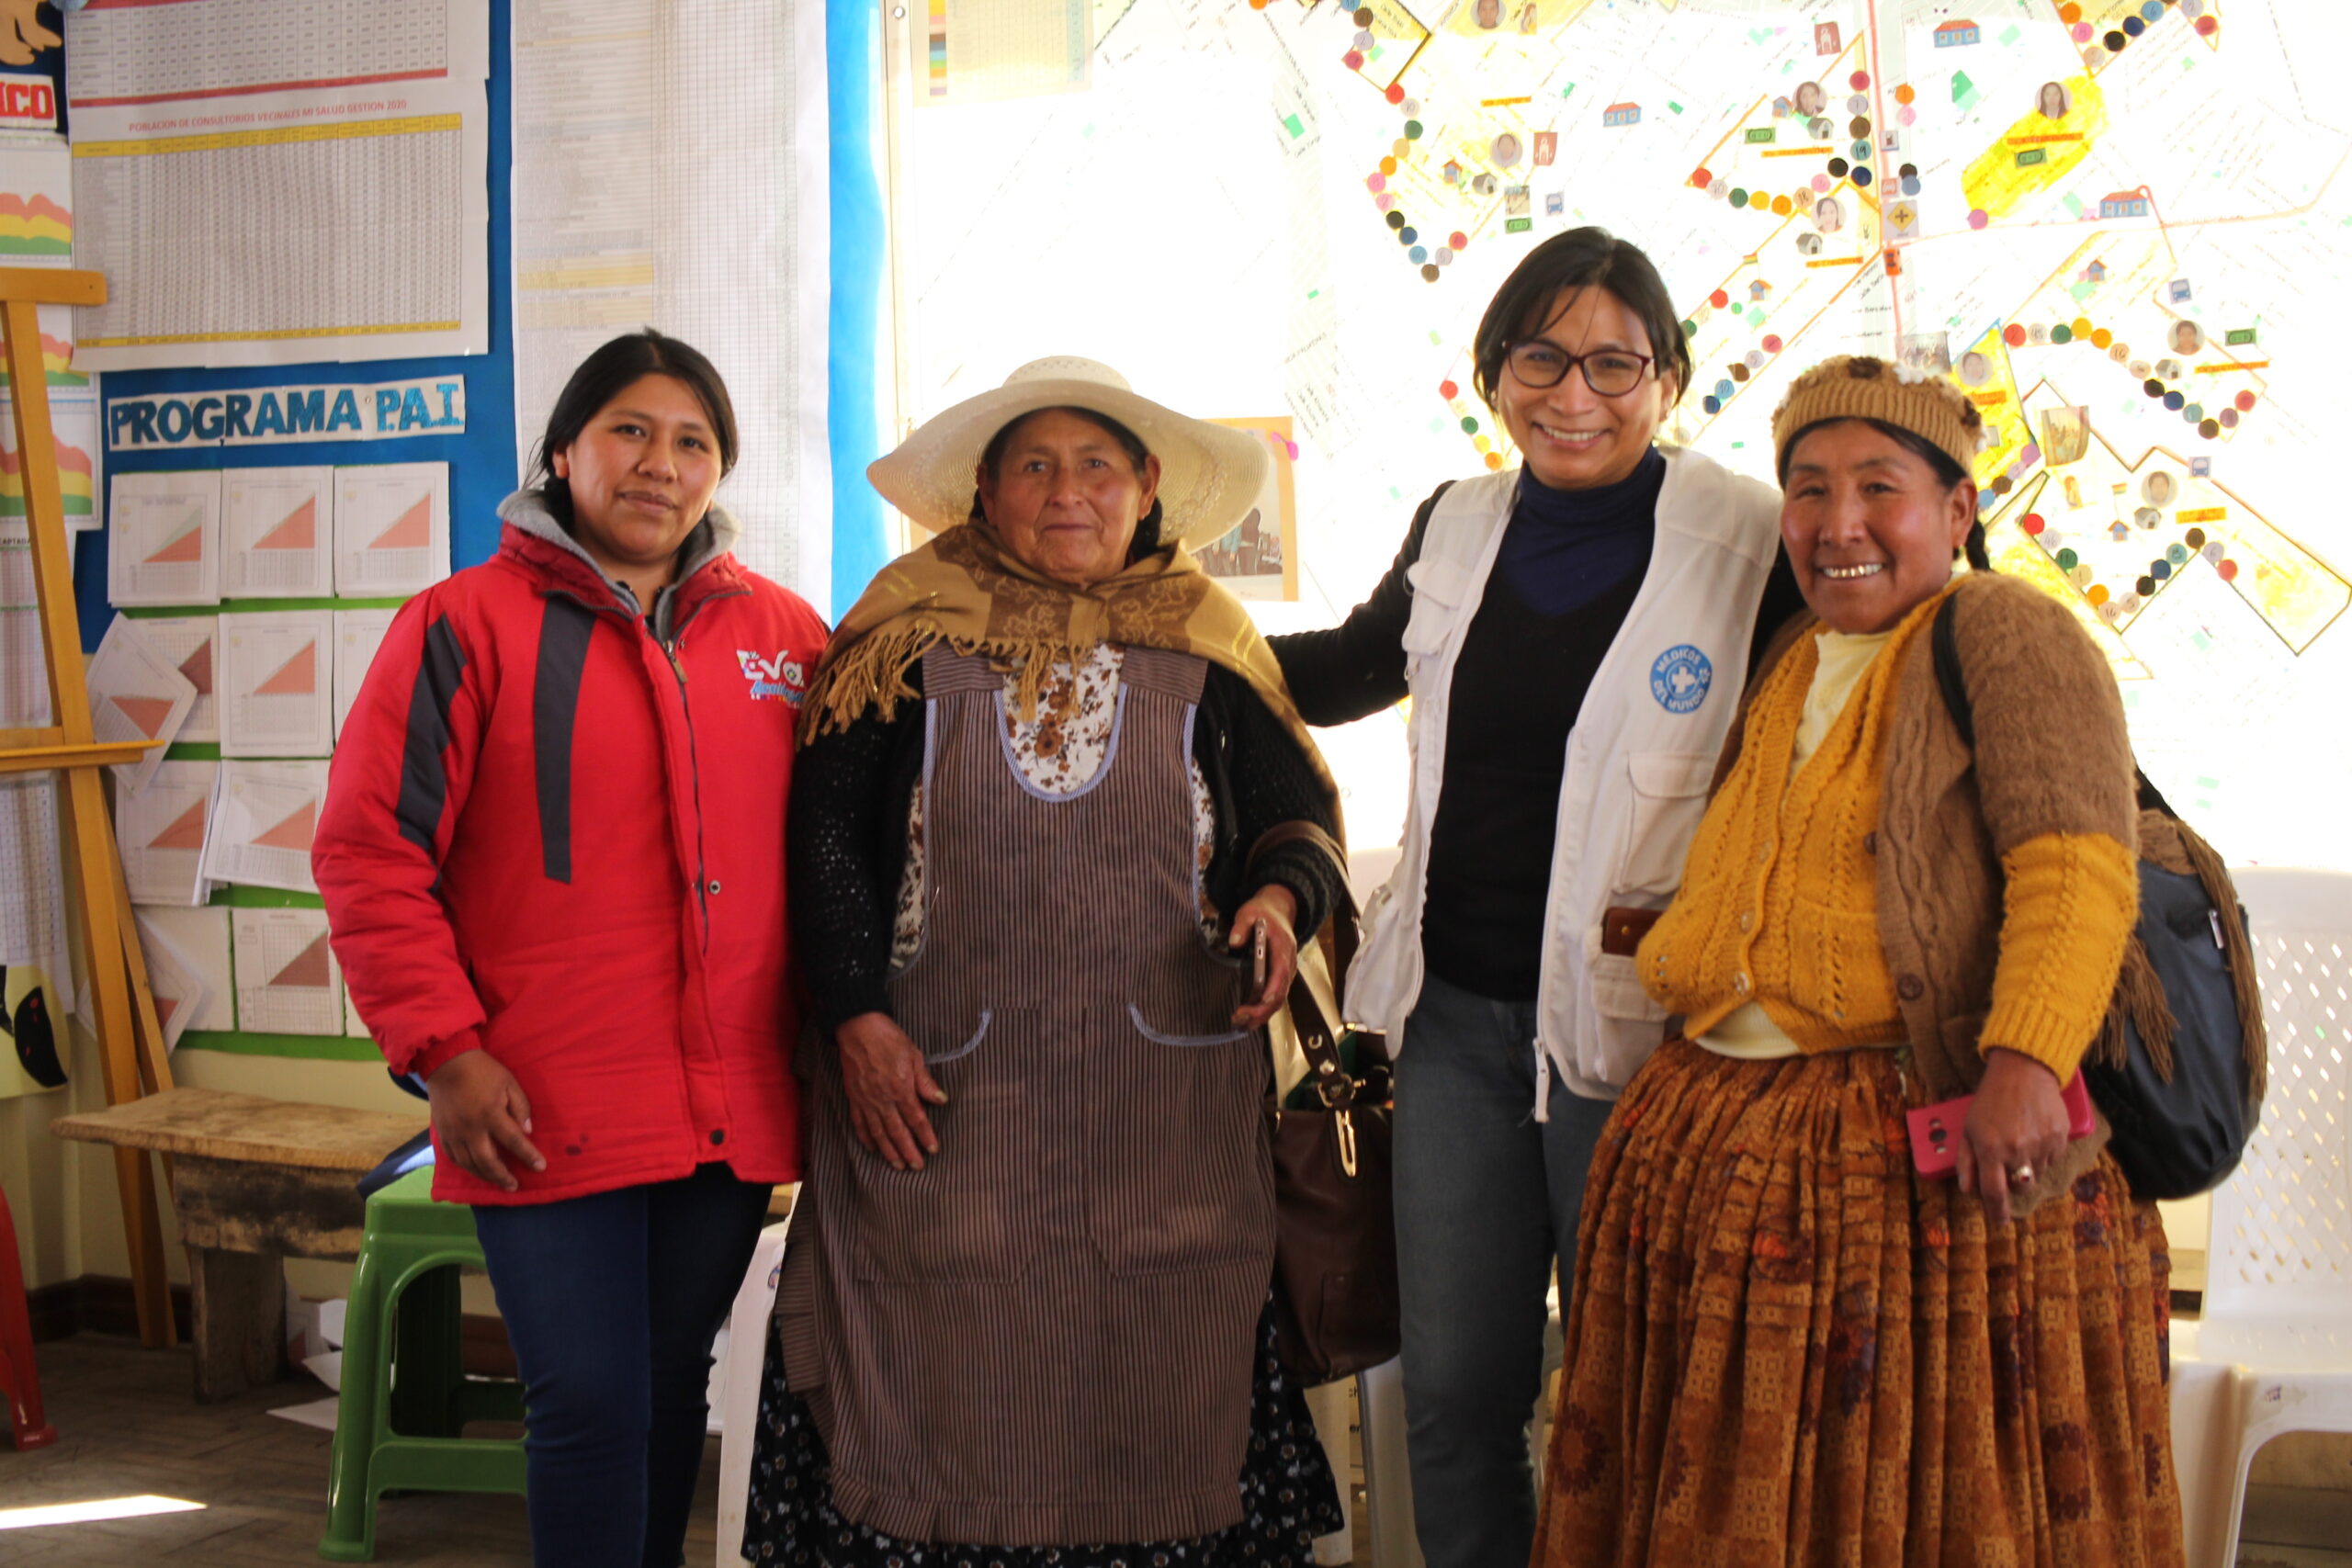 Imagen de la noticia Acceso a servicios de salud sexual y reproductiva, promoviendo derechos, igualdad de género y una vida libre de violencia para mujeres de el Alto-Red los Andes, Bolivia